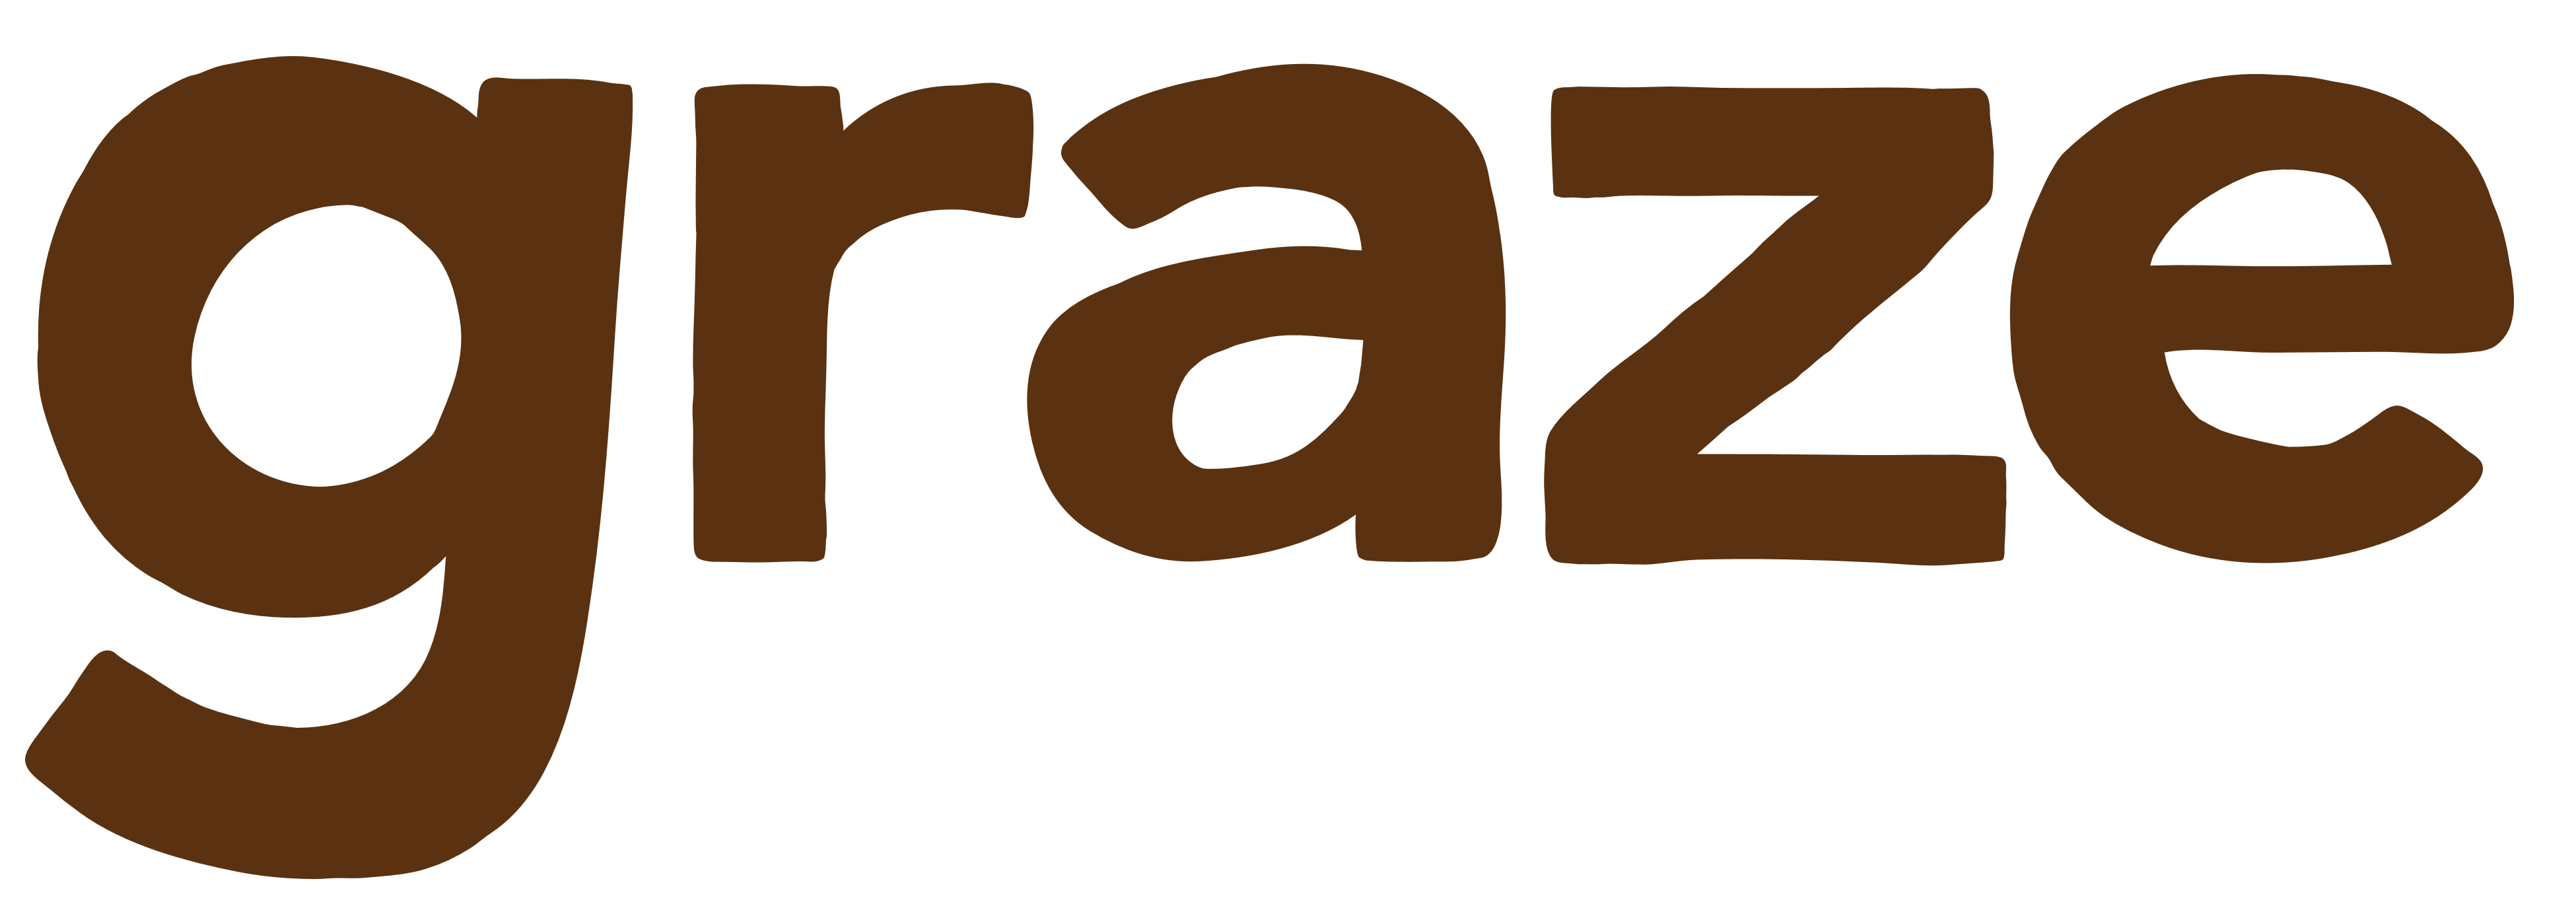 Graze.com Logo - Graze – Logos Download